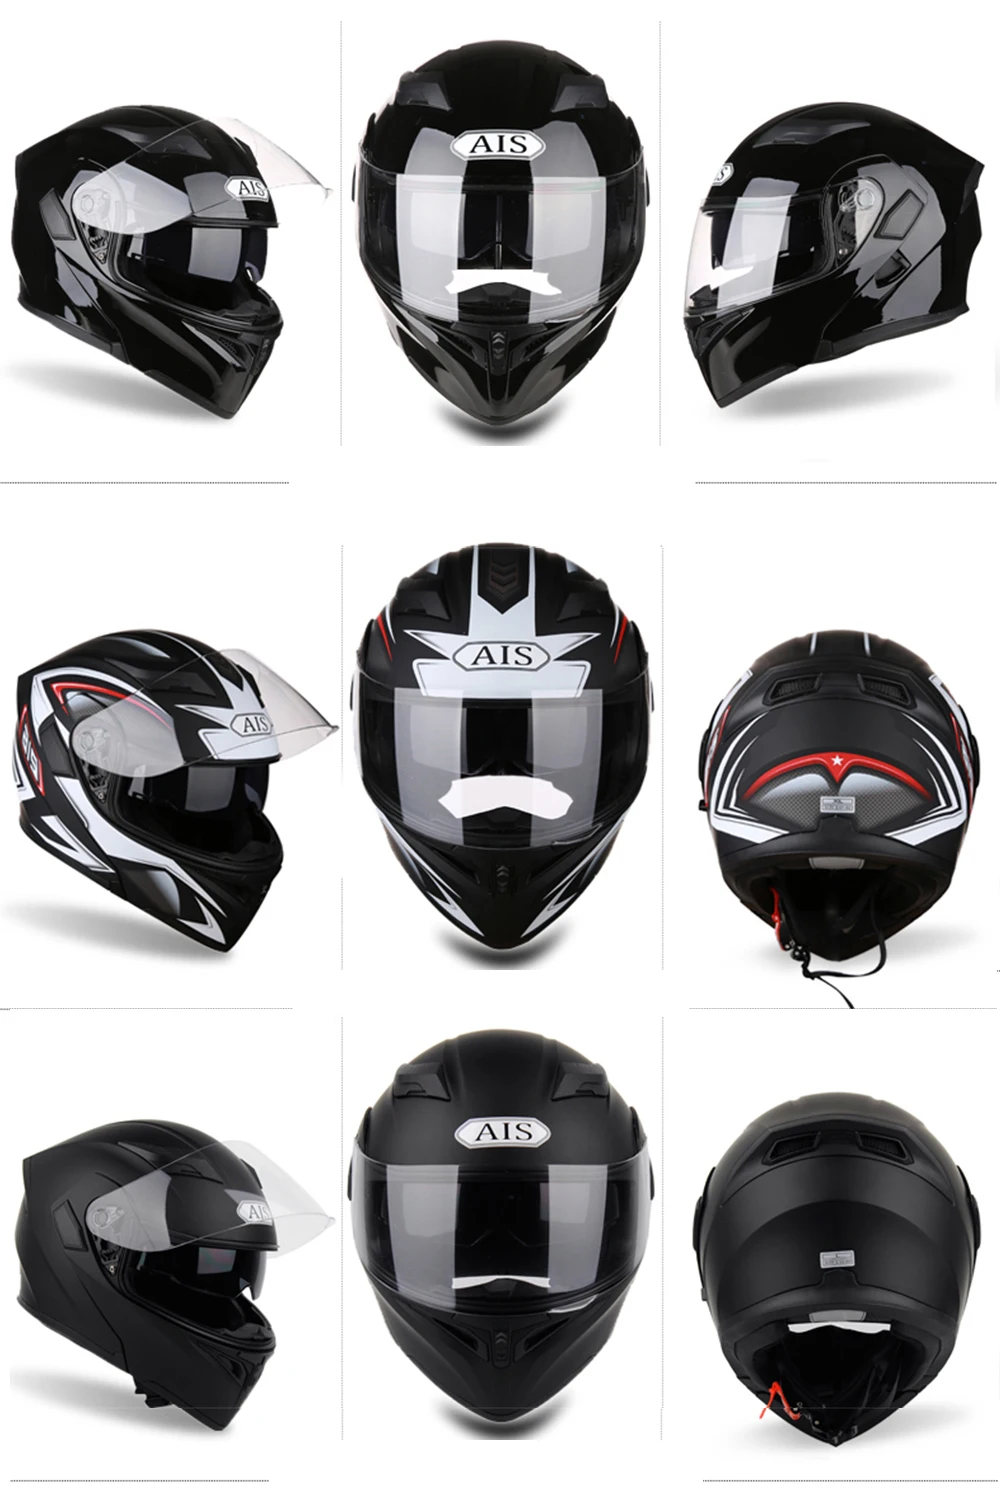 Мотоциклетный шлем bluetooth гарнитуры для крест Nenki шлем реактивный шлем, полностью закрывающий лицо пилот Kaska Rockstar мотокросс